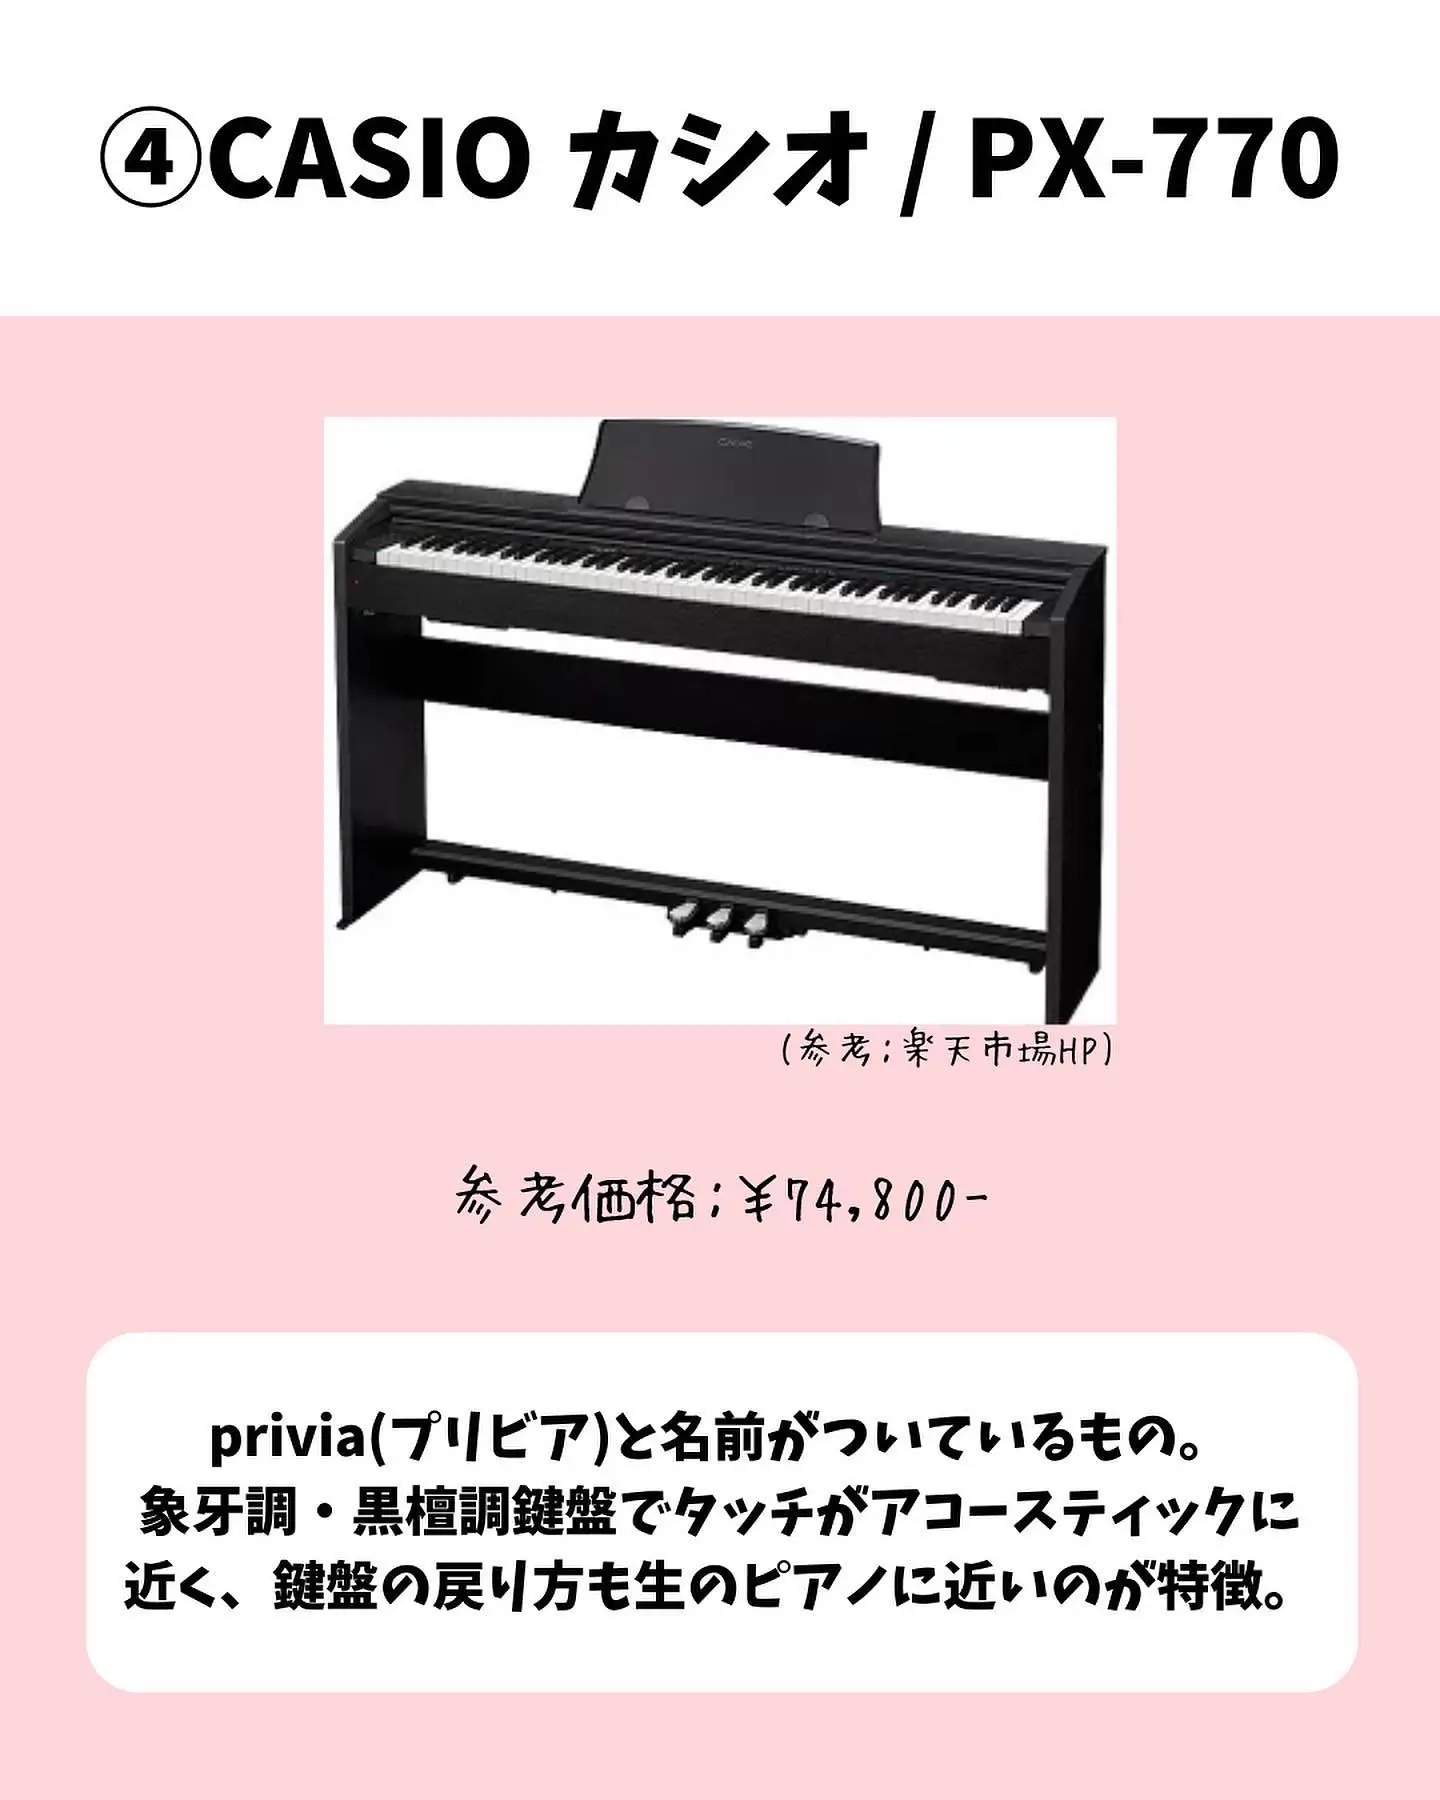 わりとキレイな簡易式の電子ピアノです。ピアノ始めてみようかな？位の 